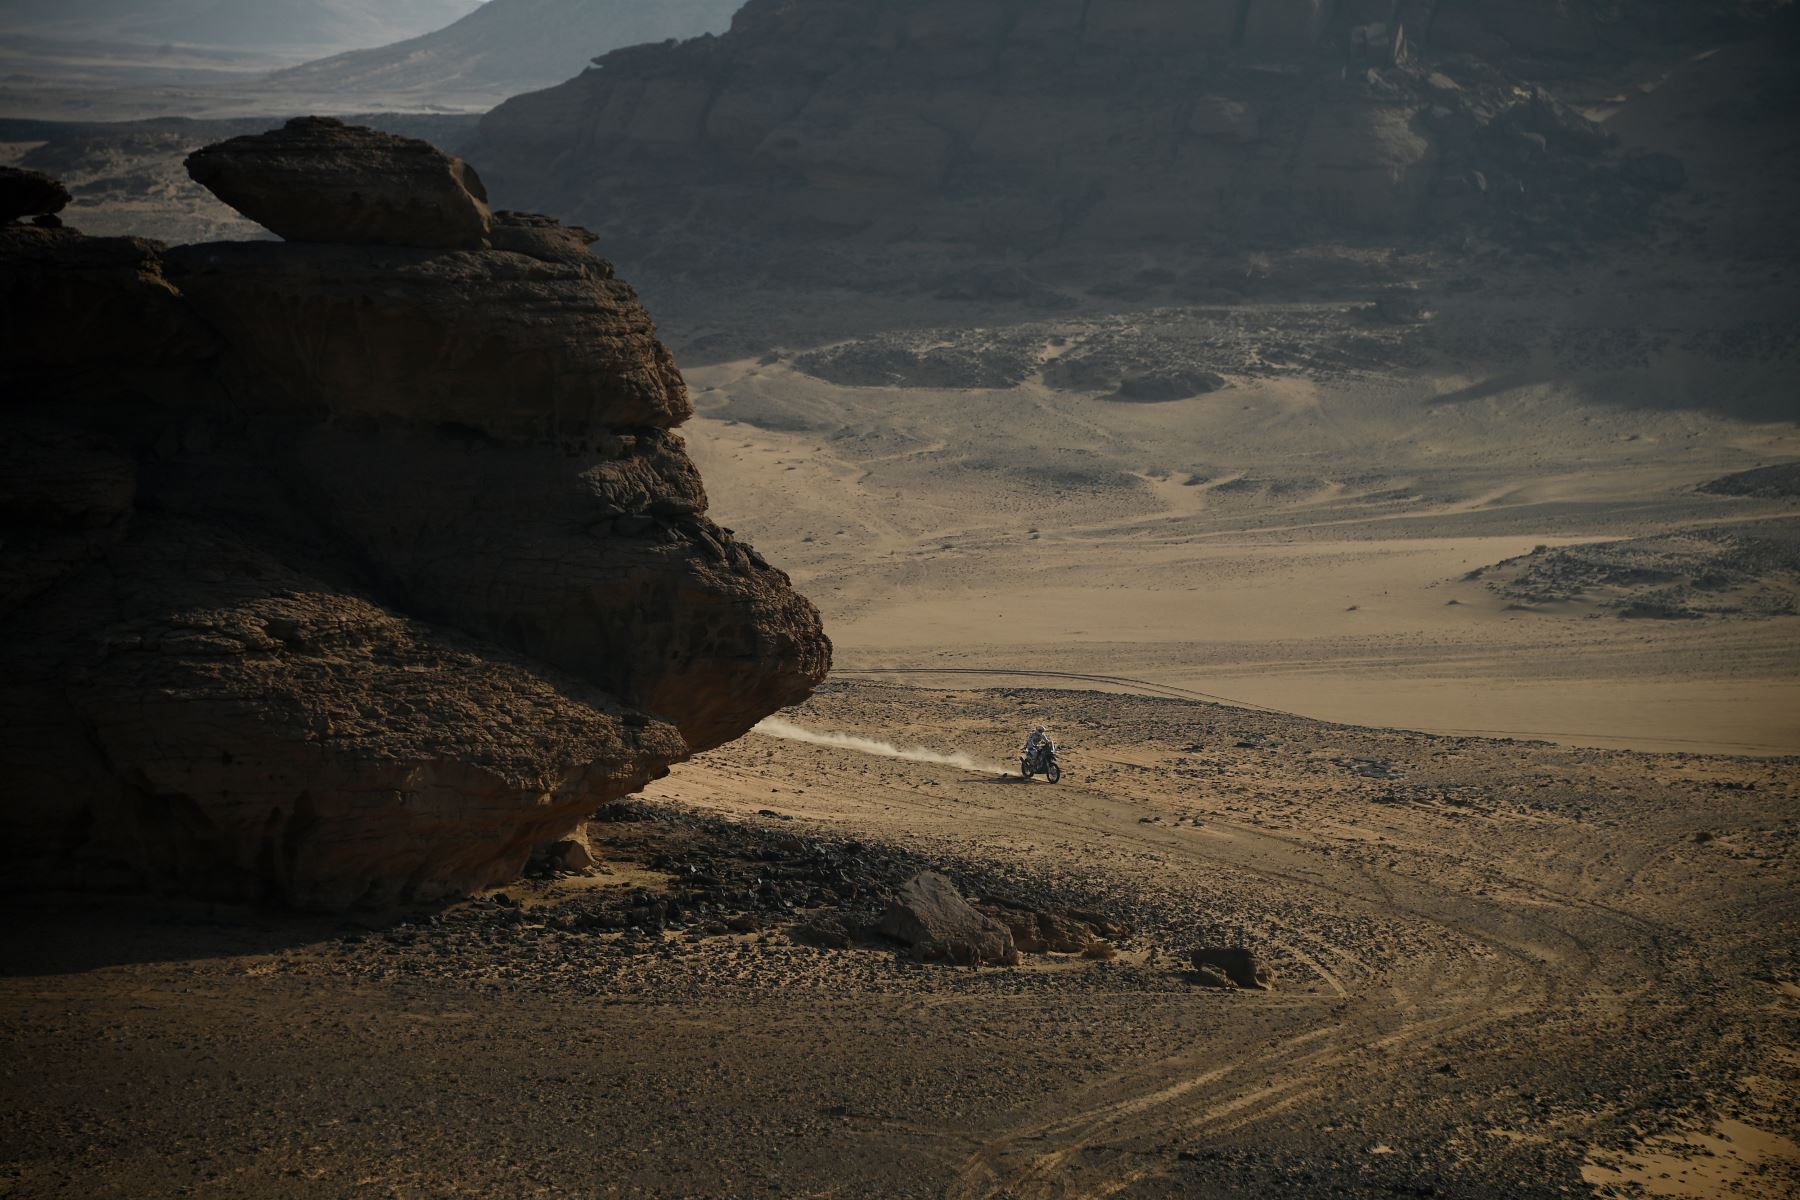 Un motociclista compite durante la etapa 8 del Rally Dakar 2021 entre Sakaka y Neom, en Arabia Saudita. Foto: AFP